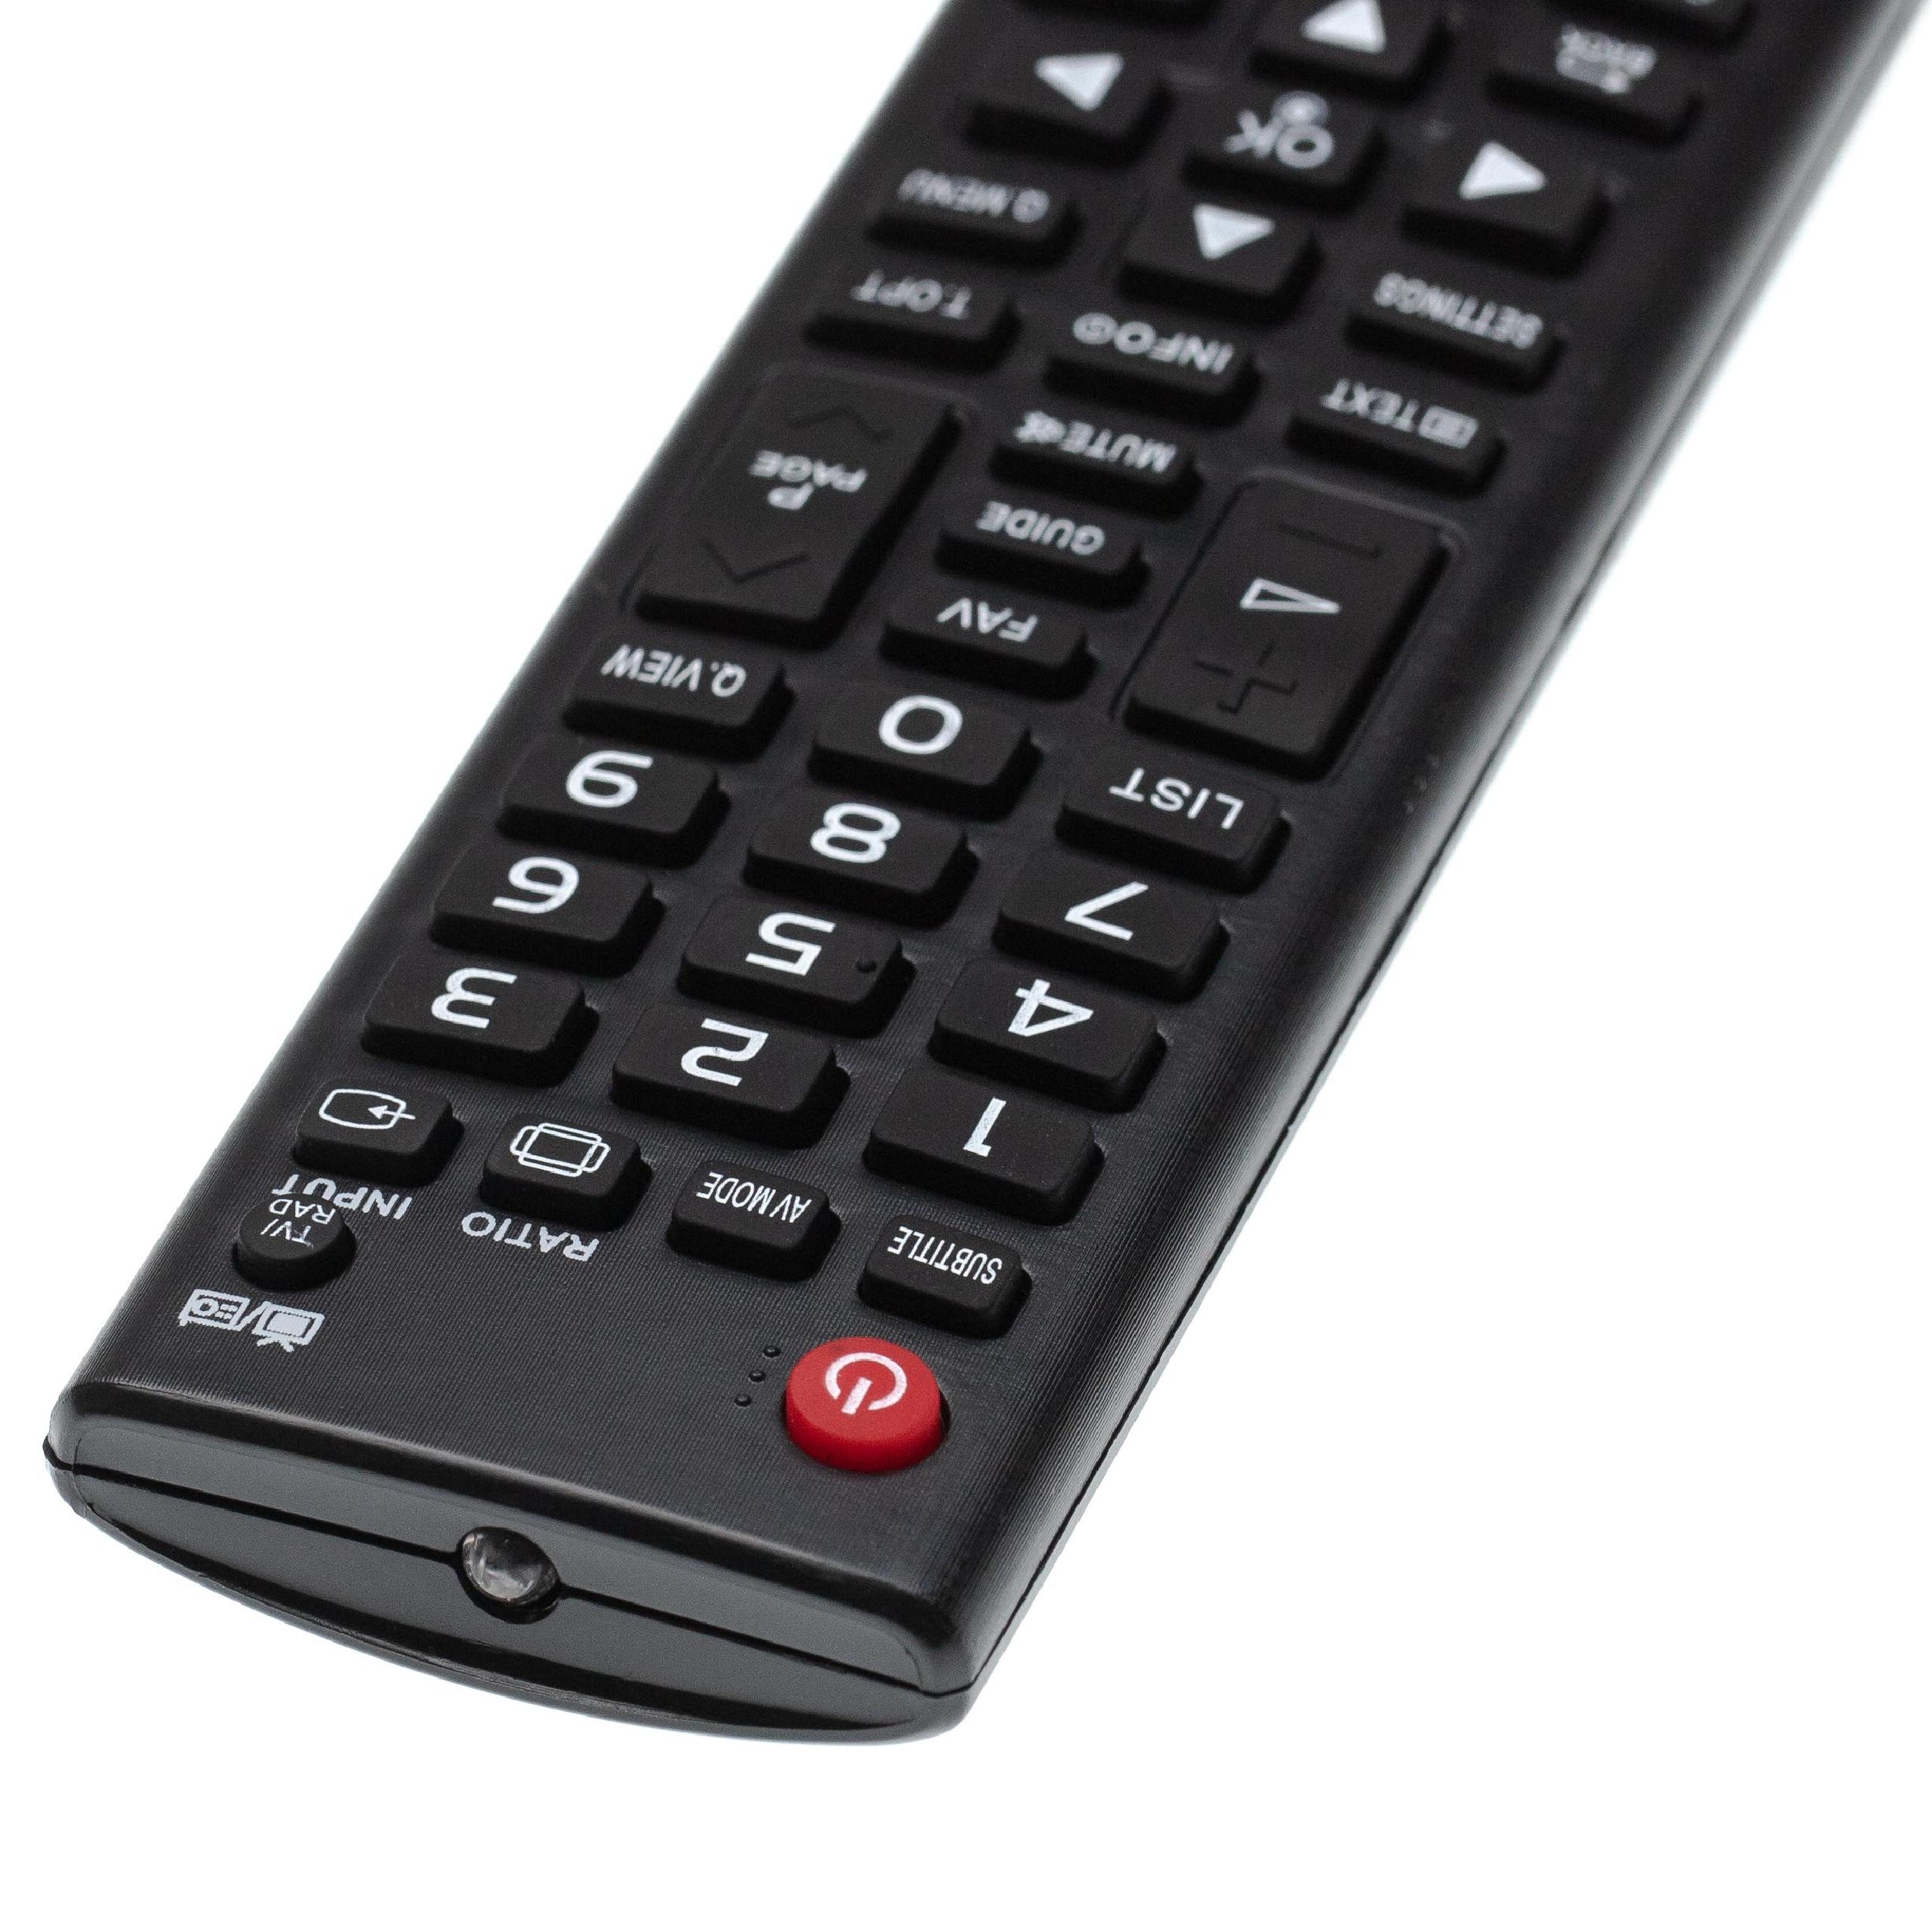 Vhbw telecomando di ricambio compatibile con LG 32LN550B, 37LN540B,  39LB5610, 39LN5400, 39LN5404, 39LN5406, 42LB5610 TV, televisione